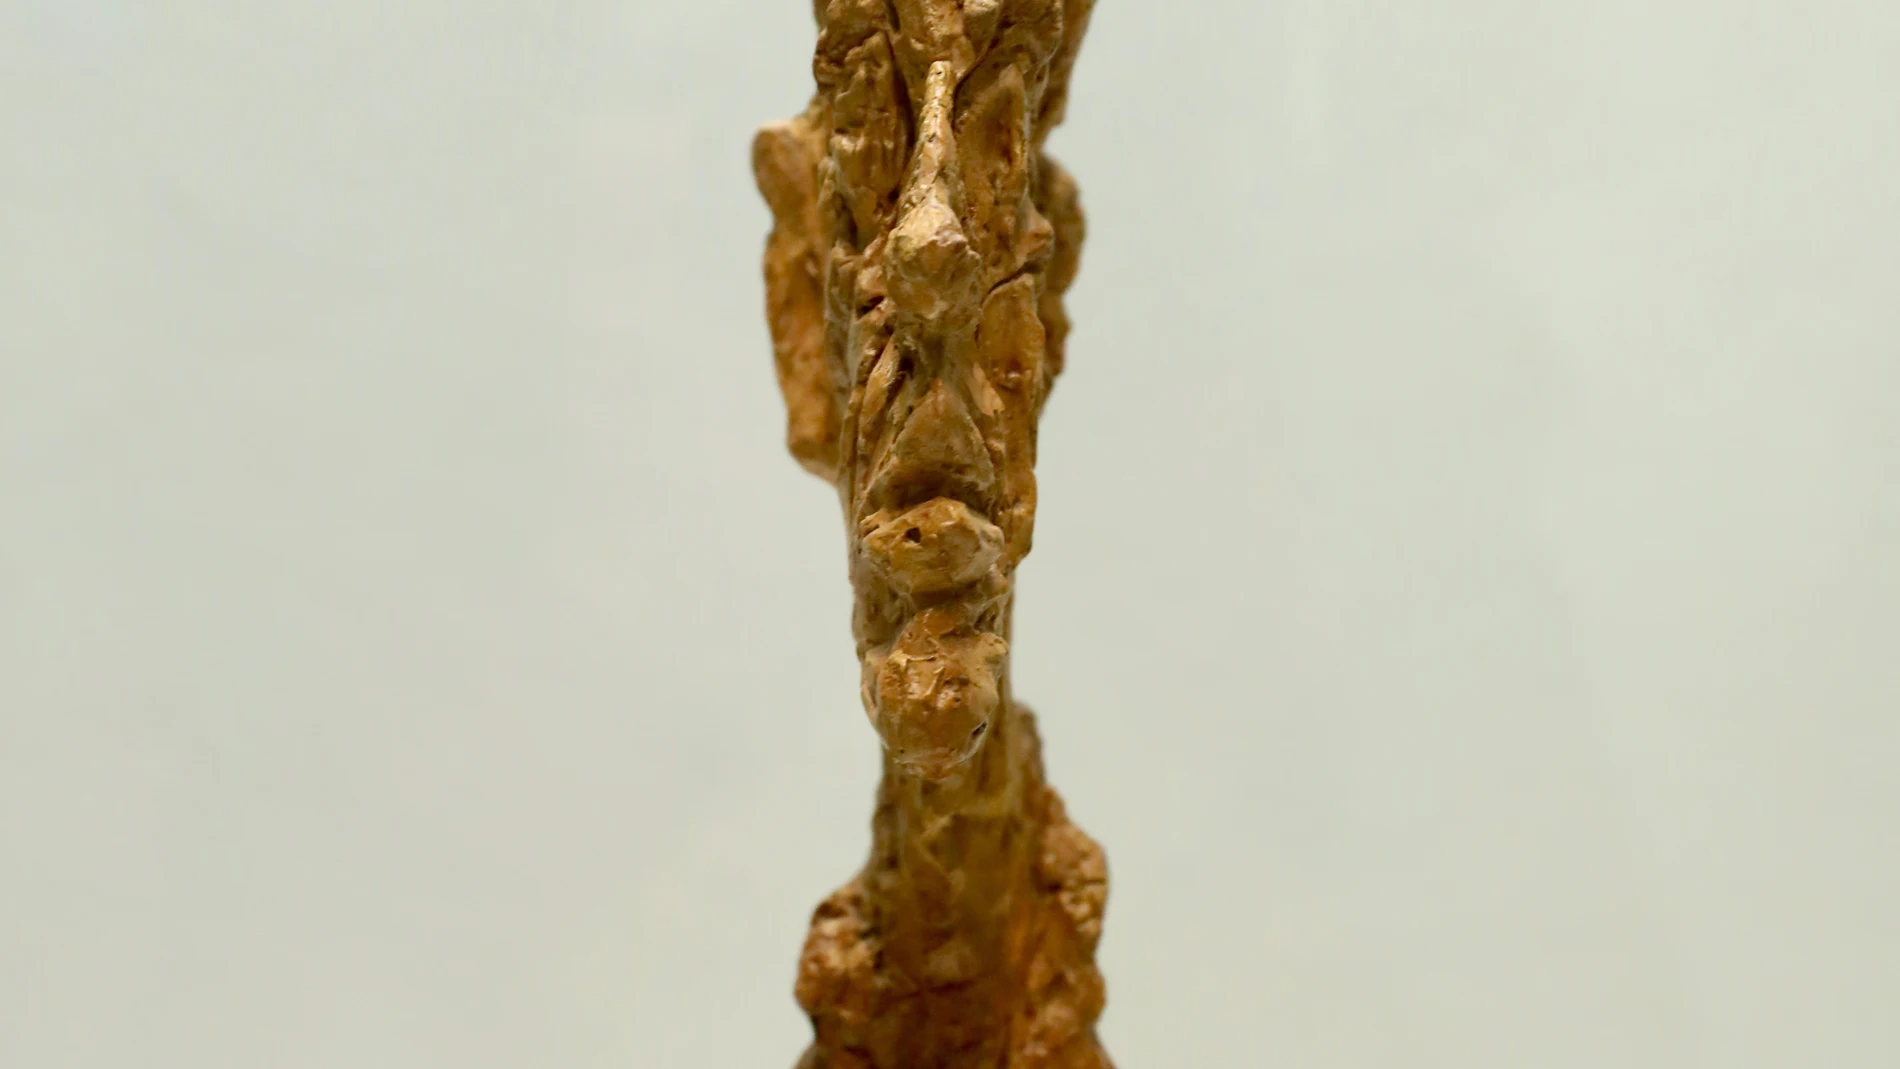 «Gran cabeza delgada» (1954), una de las obra de Giacometti, el escultor más cotizado hoy, que se exhibe en Madrid